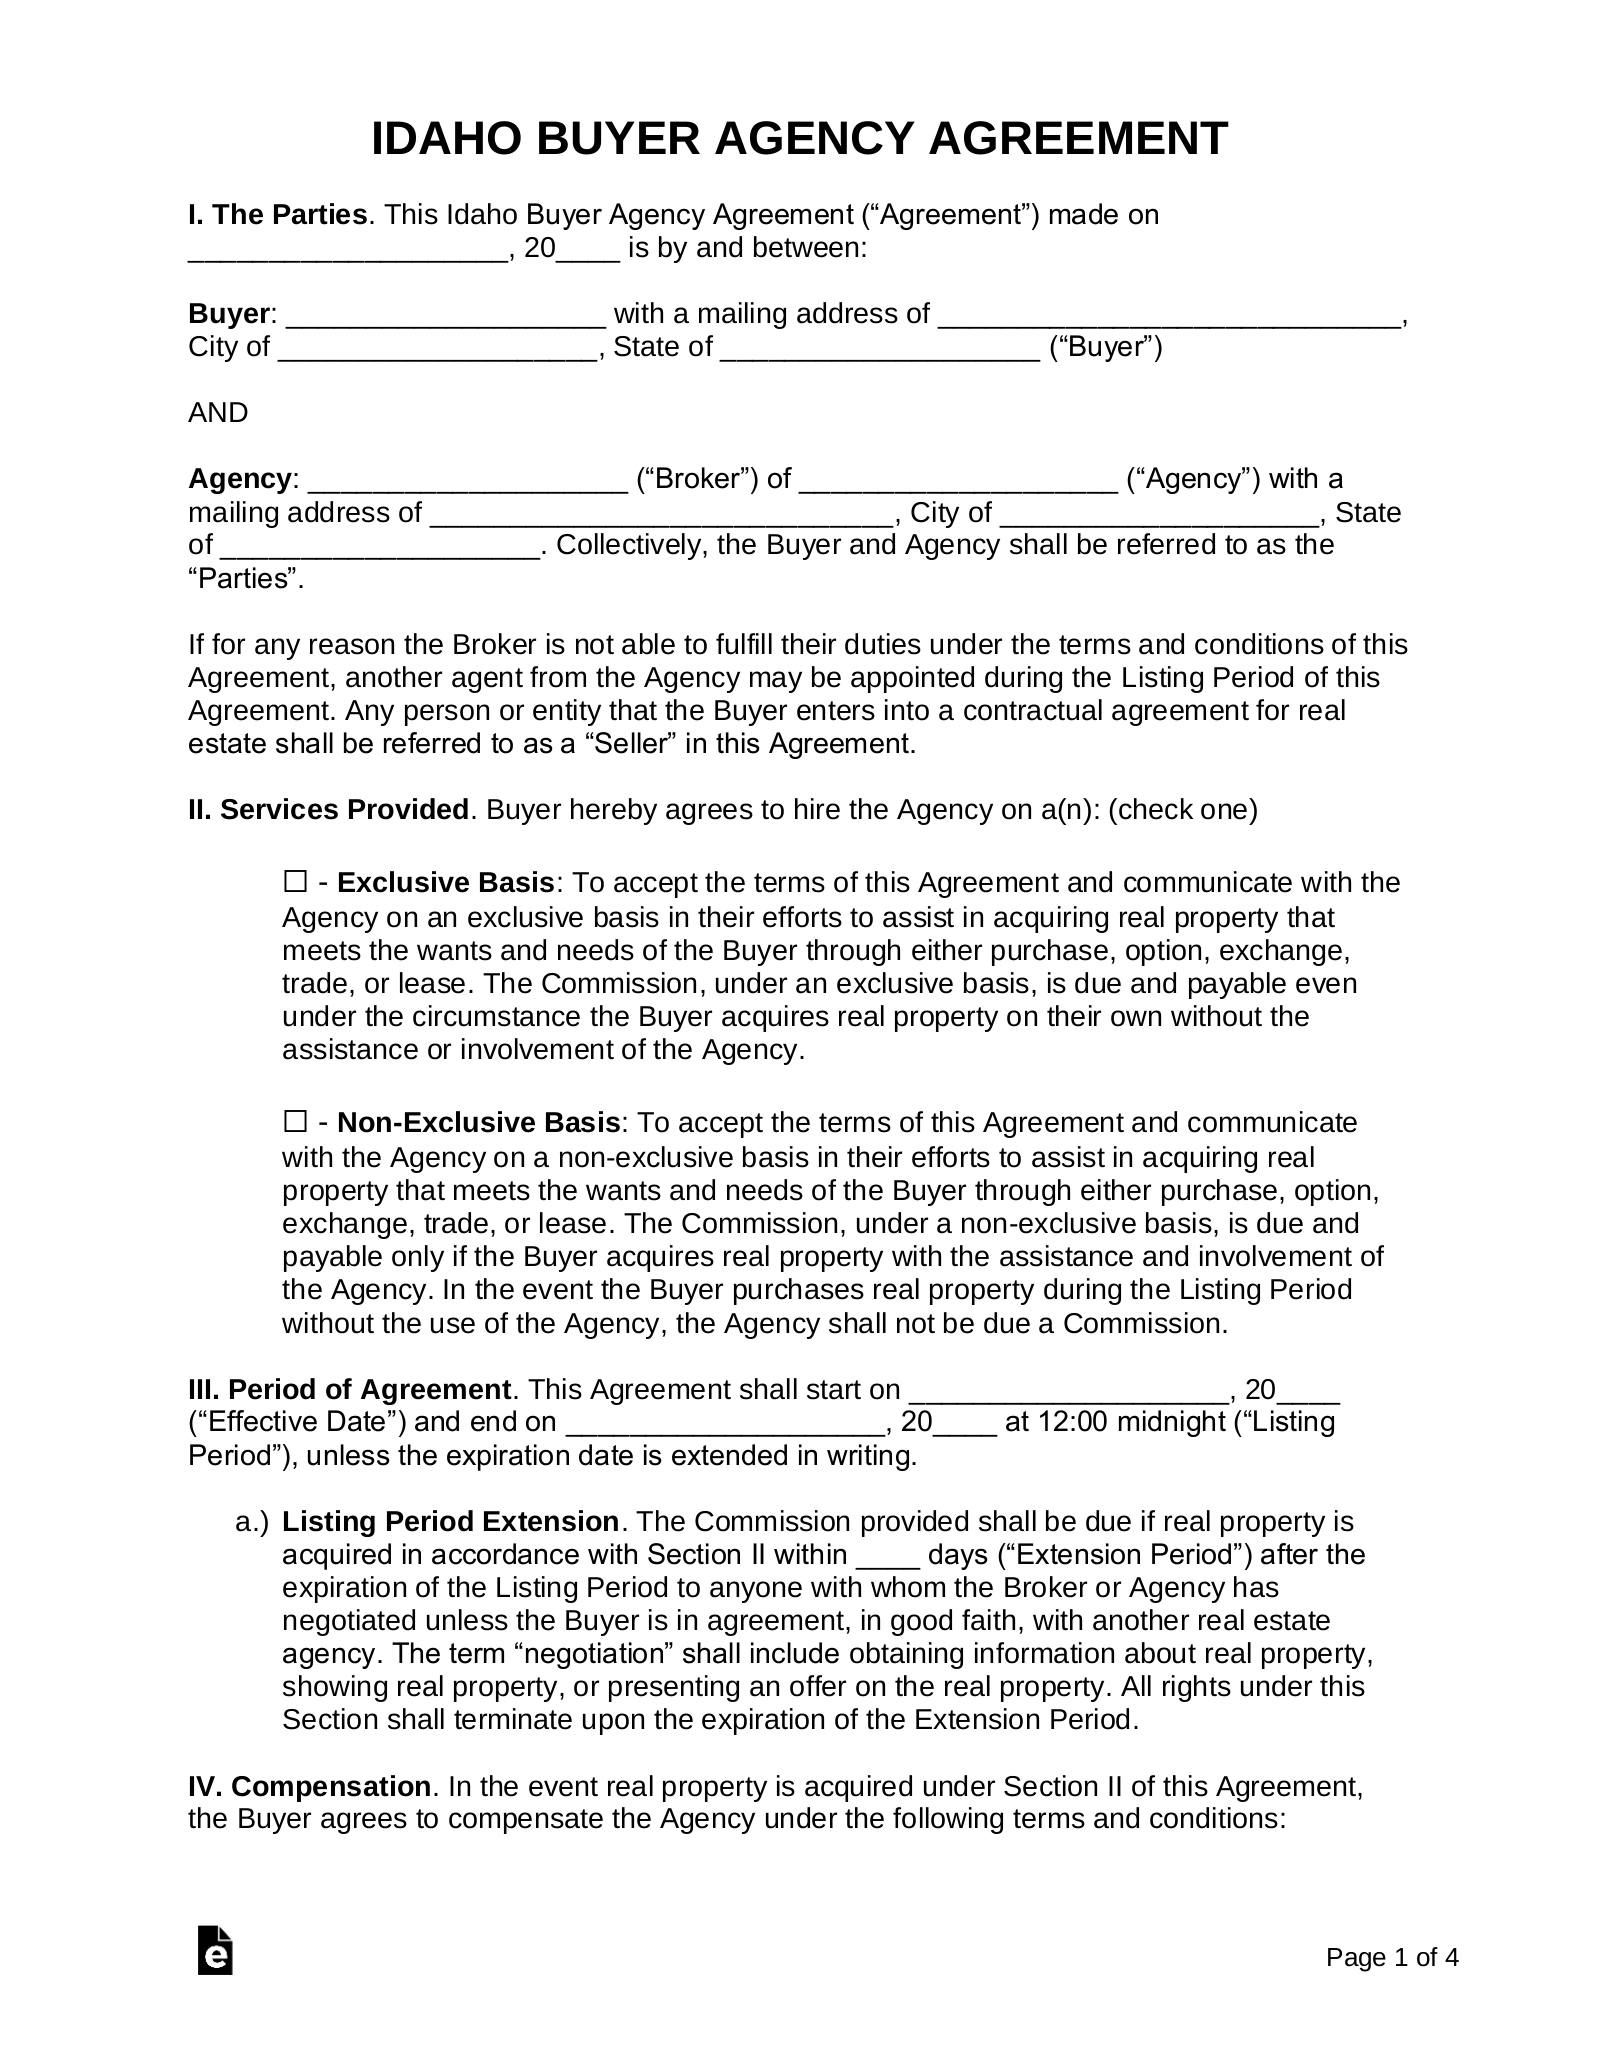 Idaho Buyer Agency Agreement